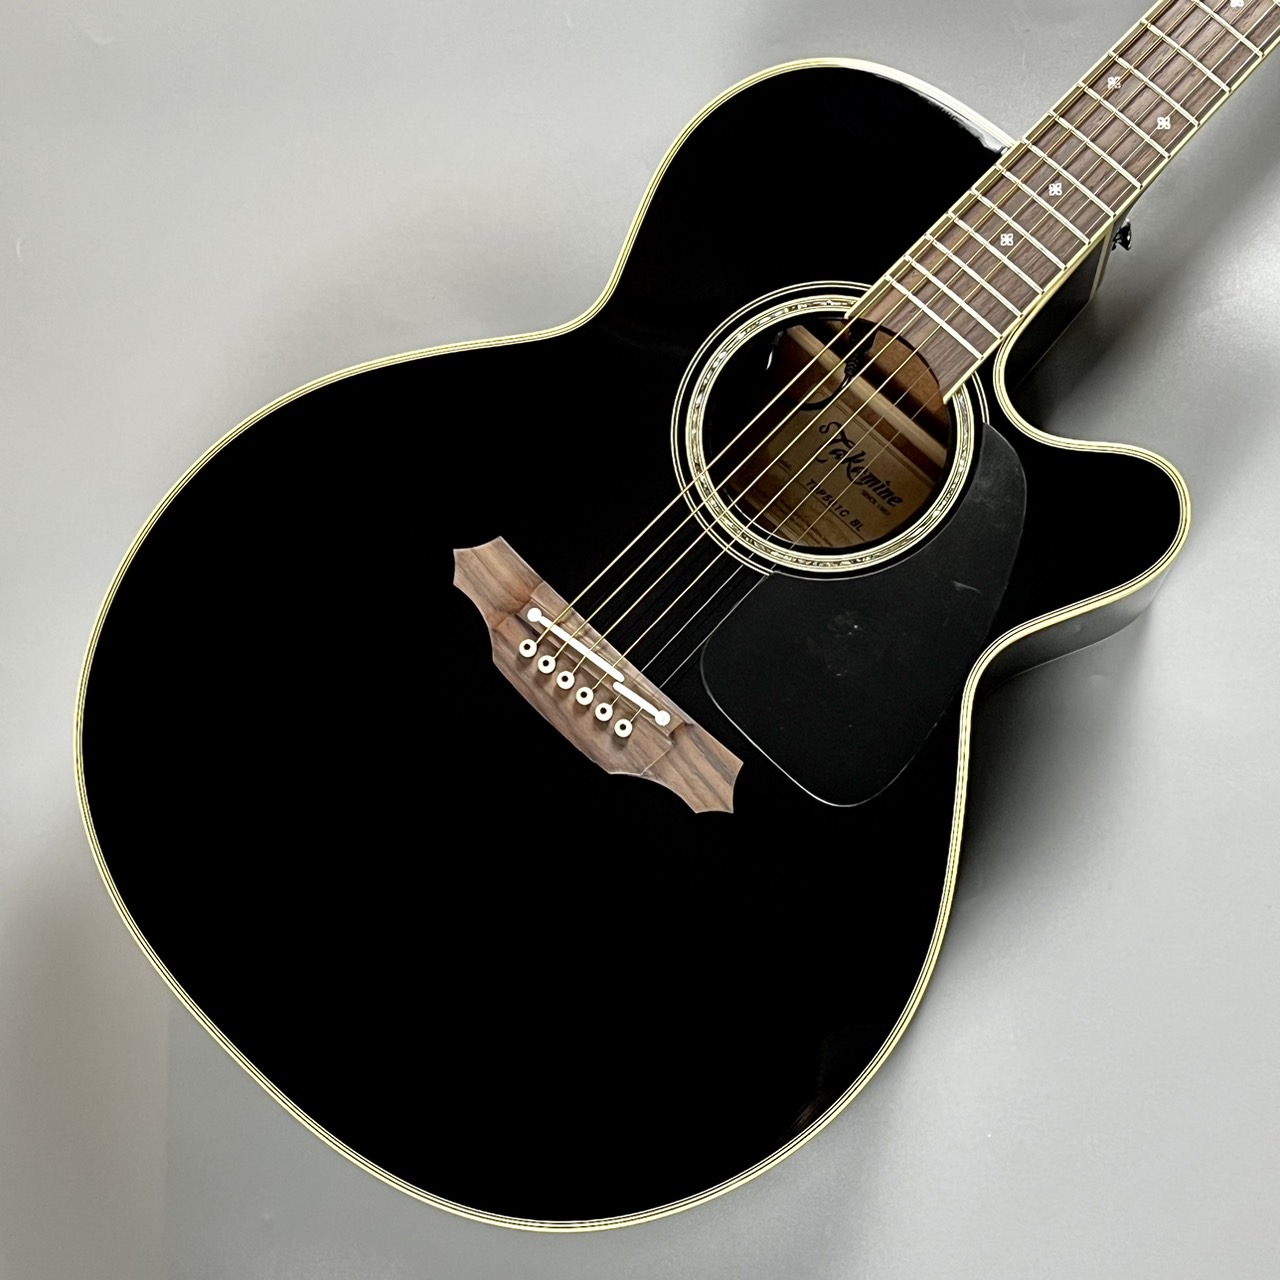 タカミネ Takamine アコースティックギター T-1N ギター 6弦 アコギ 